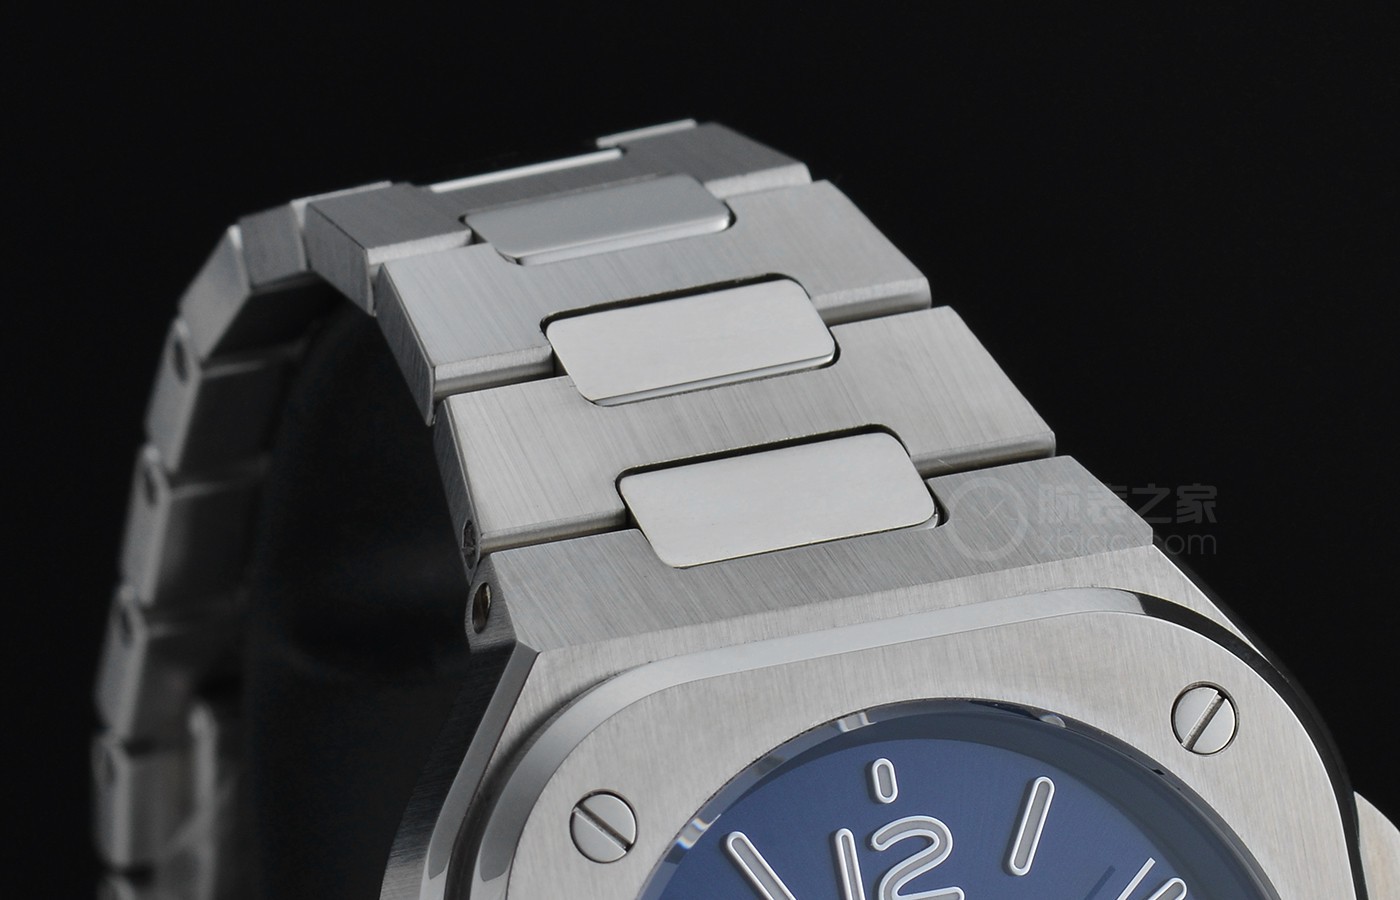 方中带圆的诠释 品鉴柏莱士全新升级BR 05系列产品腕表